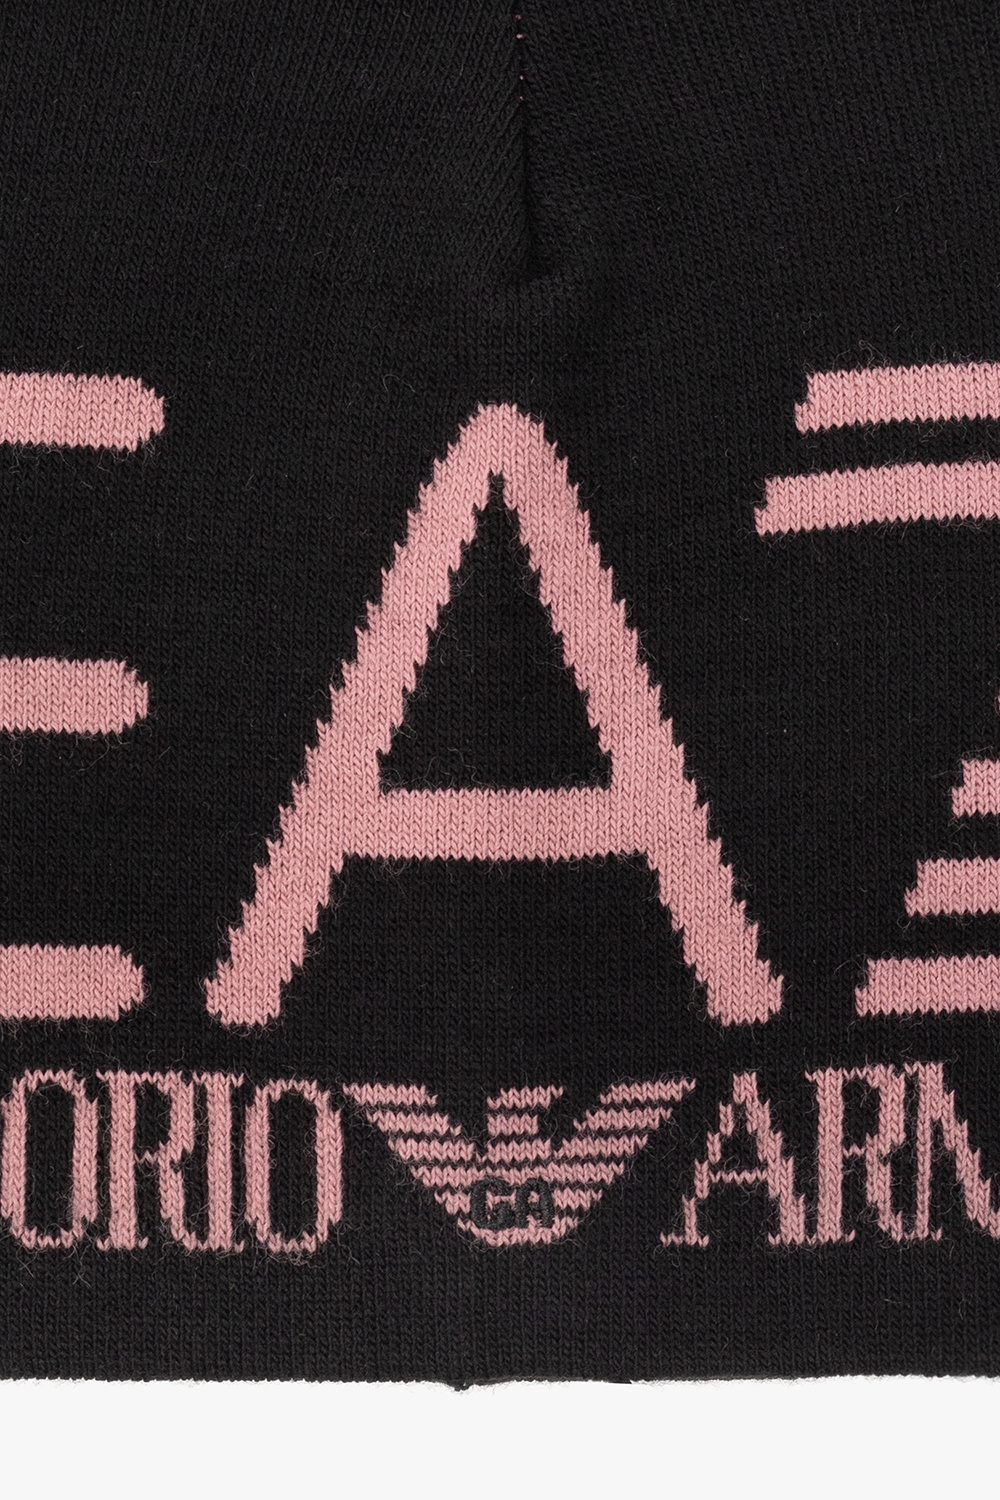 EA7 Emporio Armani Straight & regular jeans för Herr från Emporio Armani